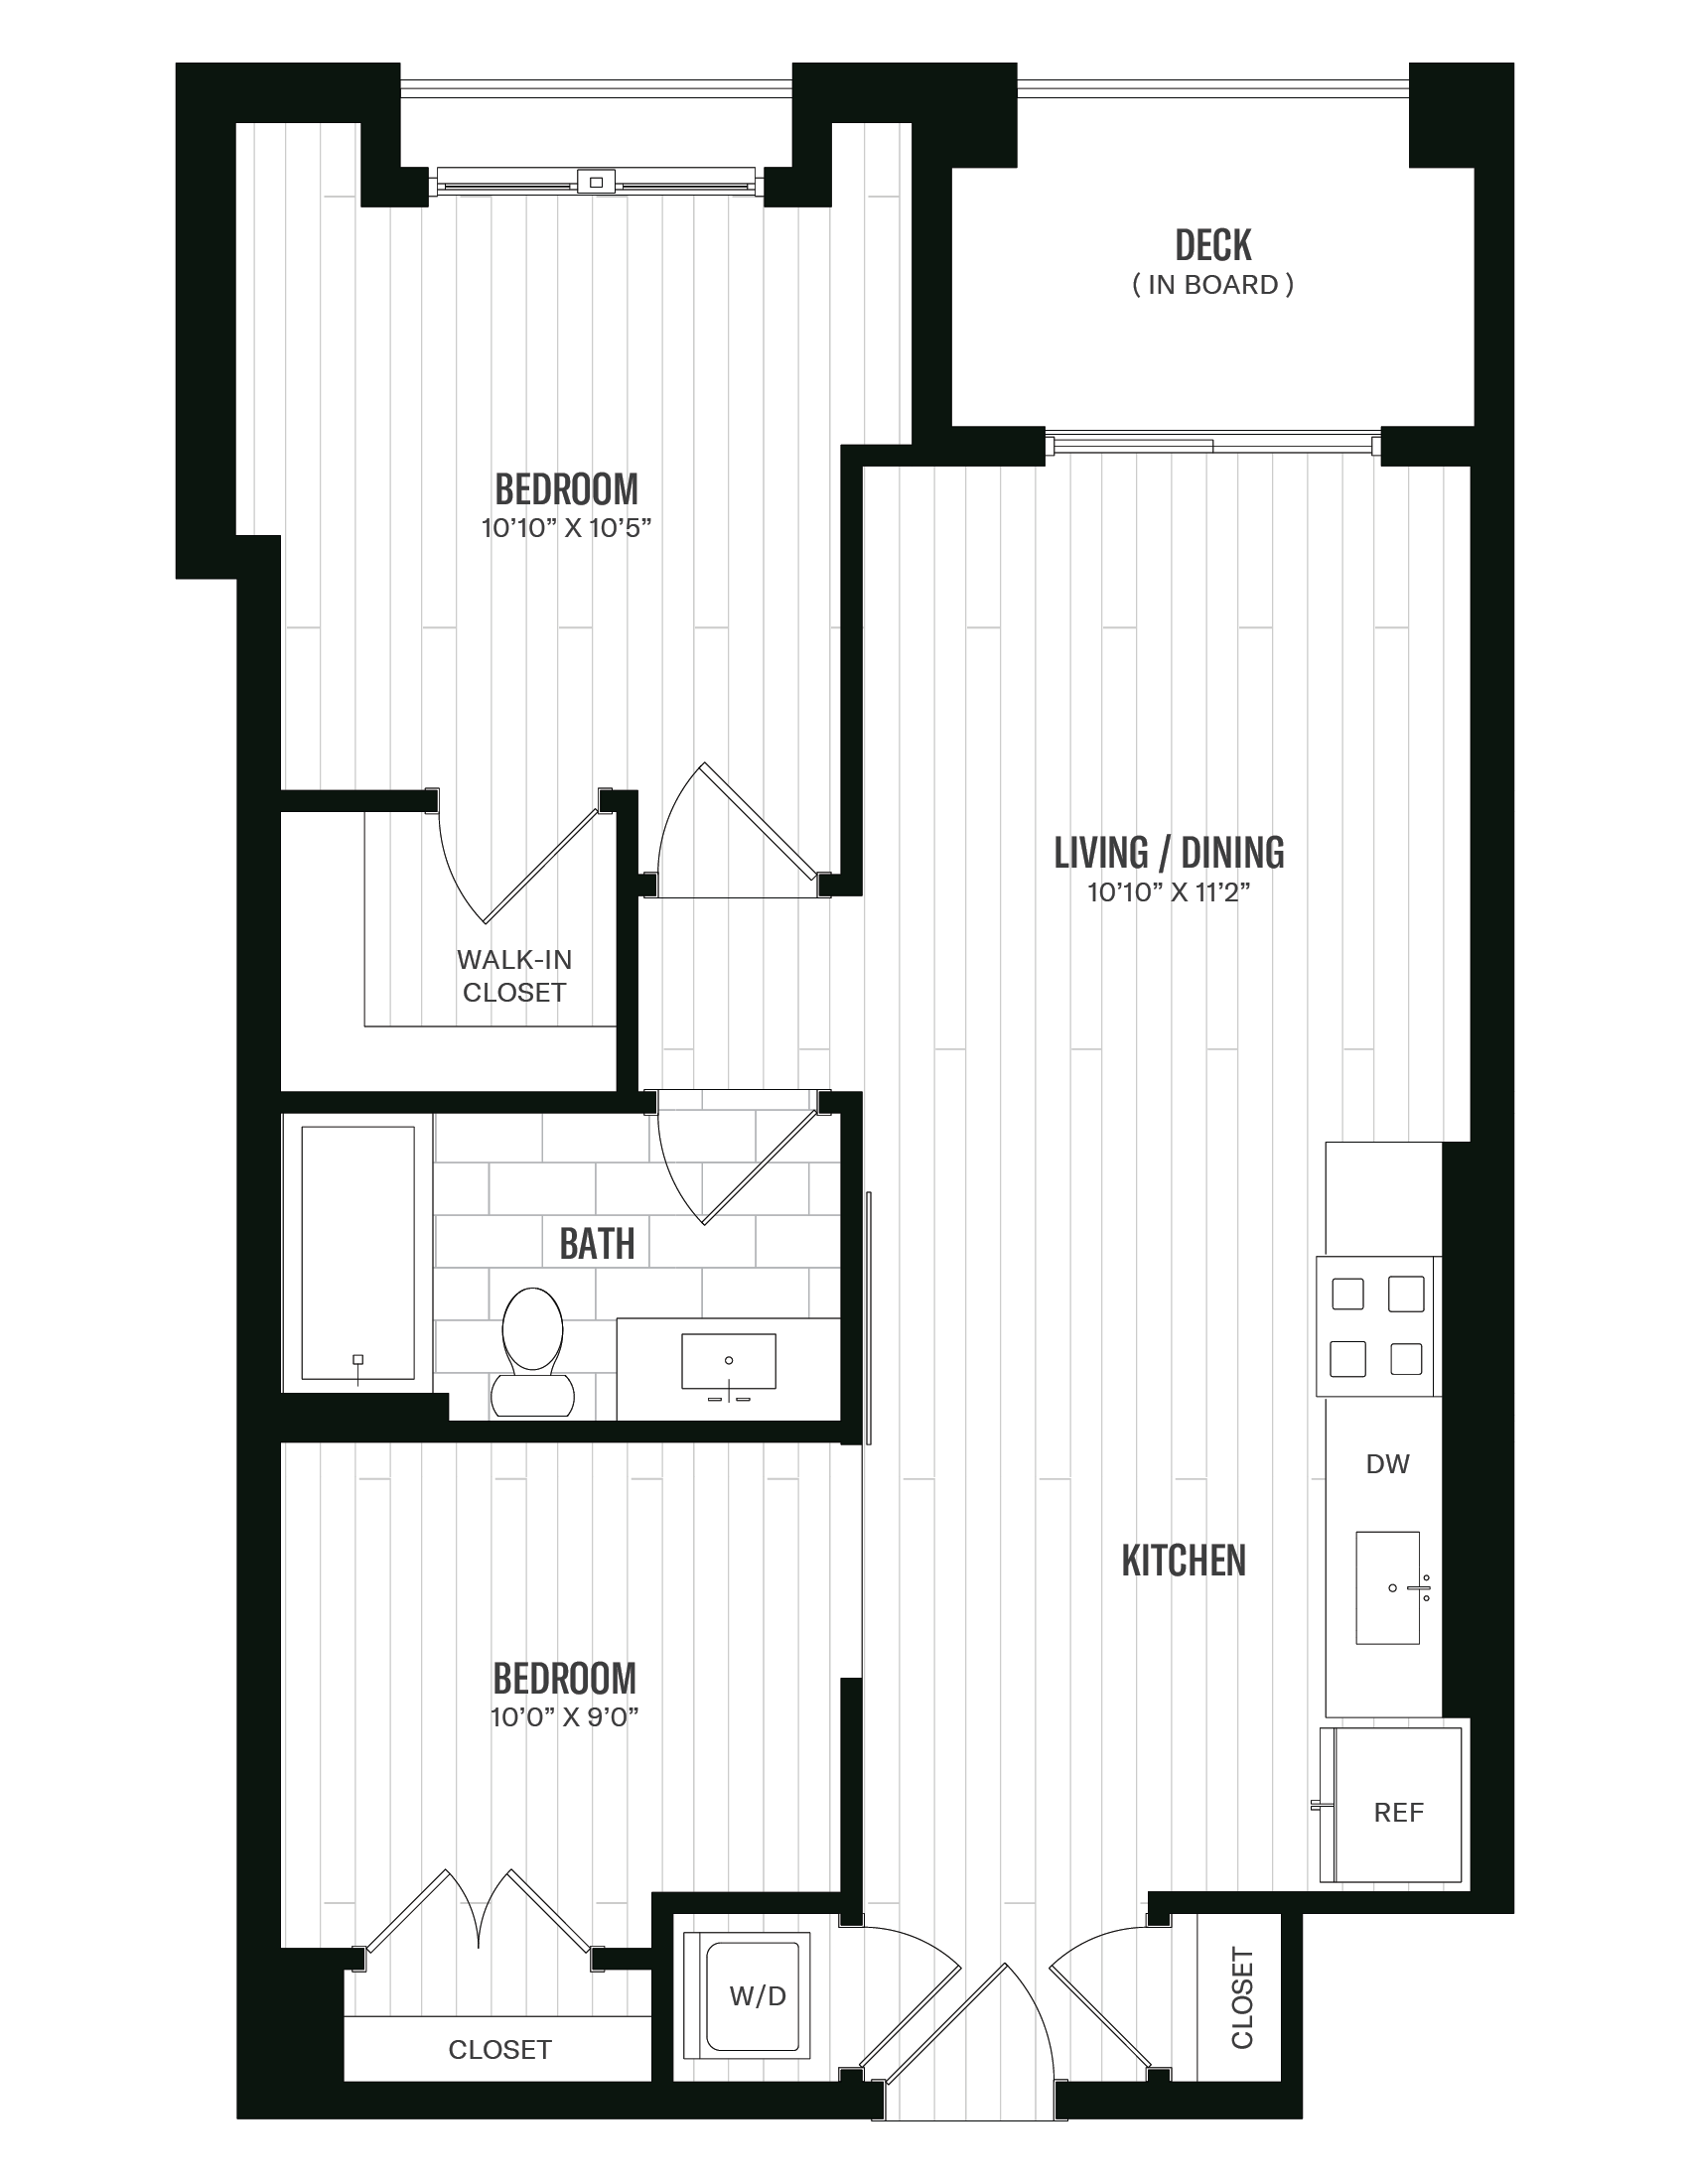 Floorplan image of unit 424